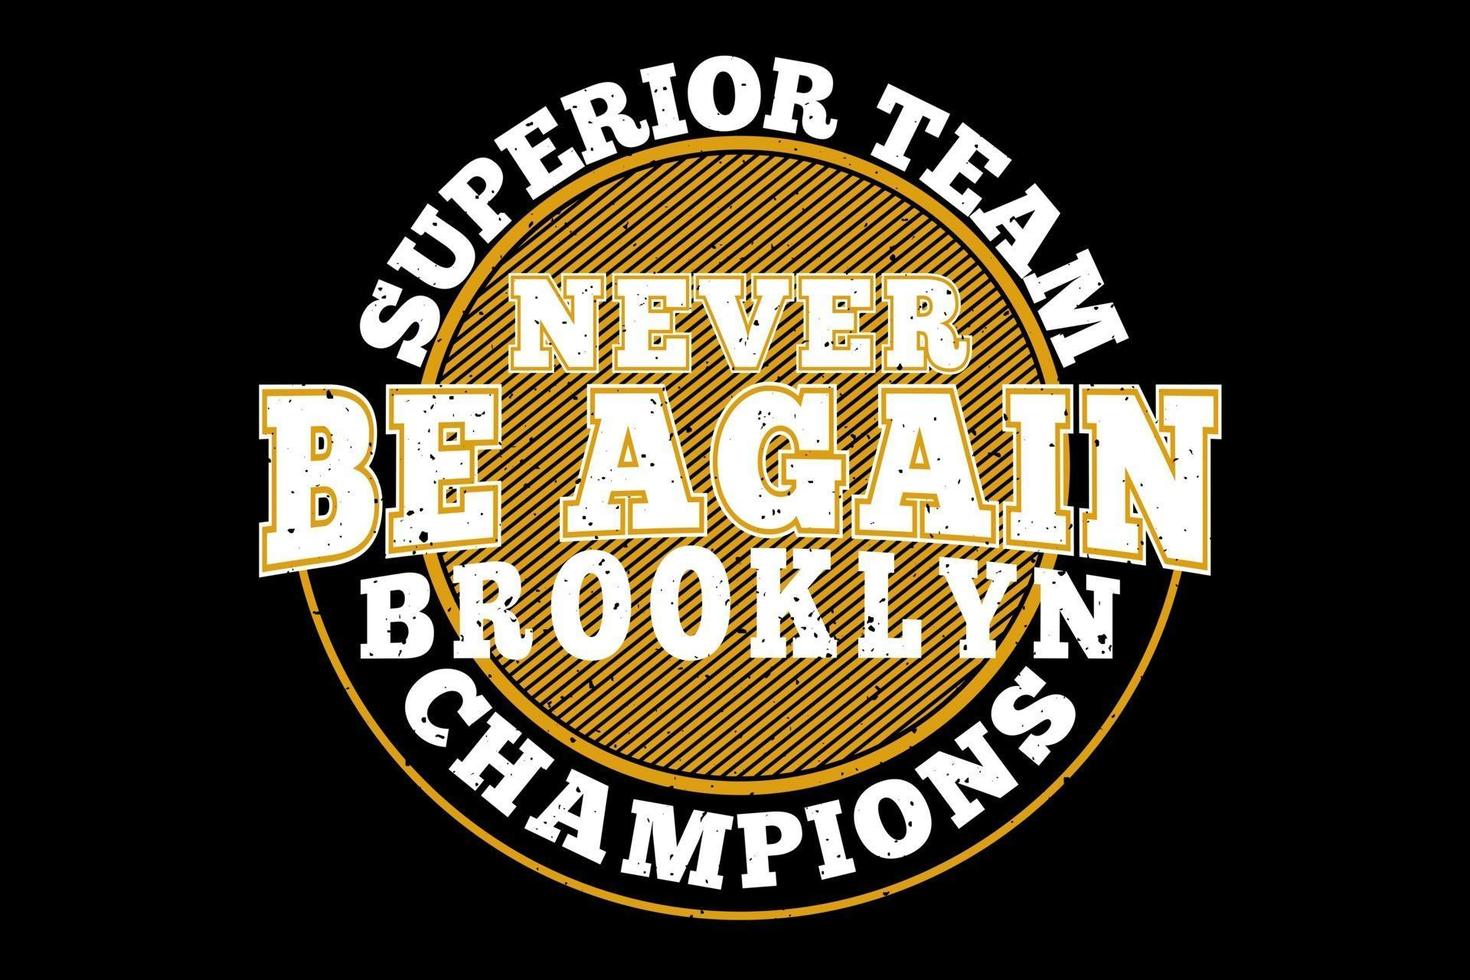 t-shirt typografie brooklyn superieure kampioenen vintage stijl vector